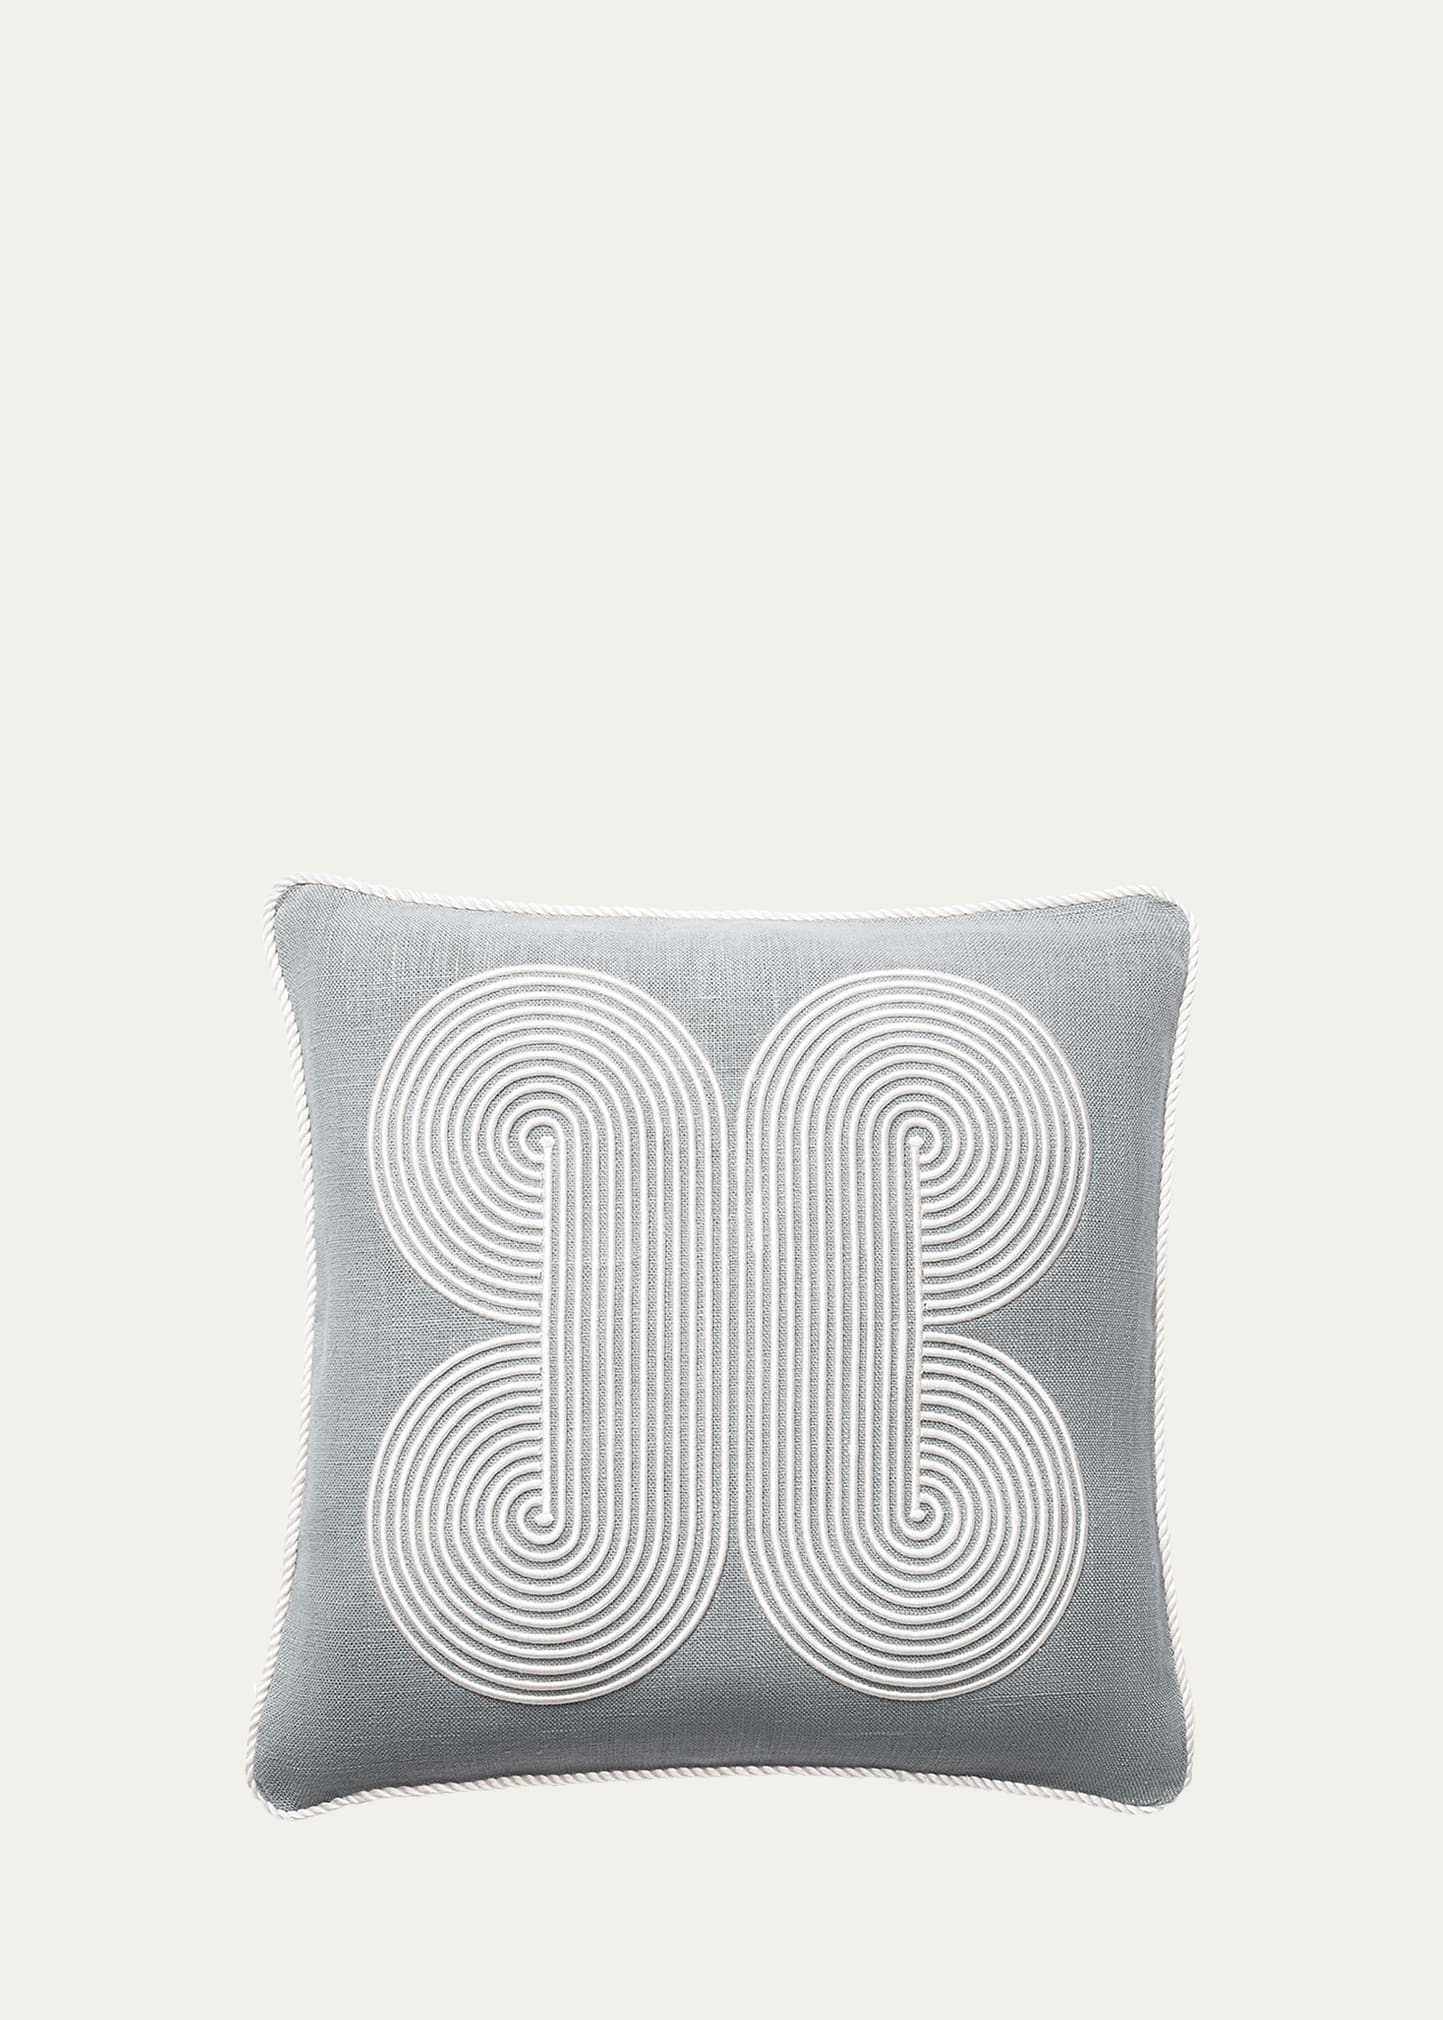 Pompidou Quatrefoil Pillow, Celadon